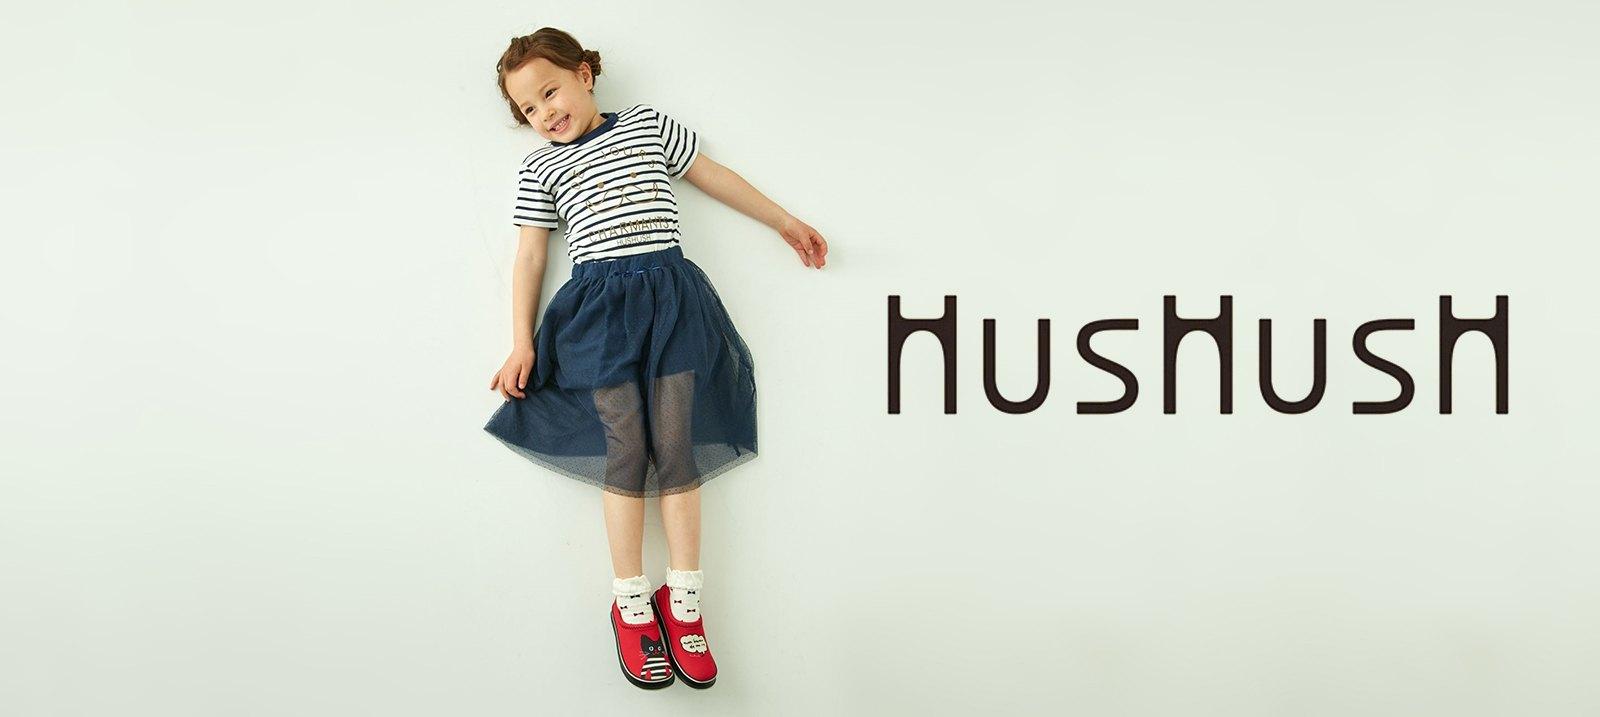 HusHush for kids